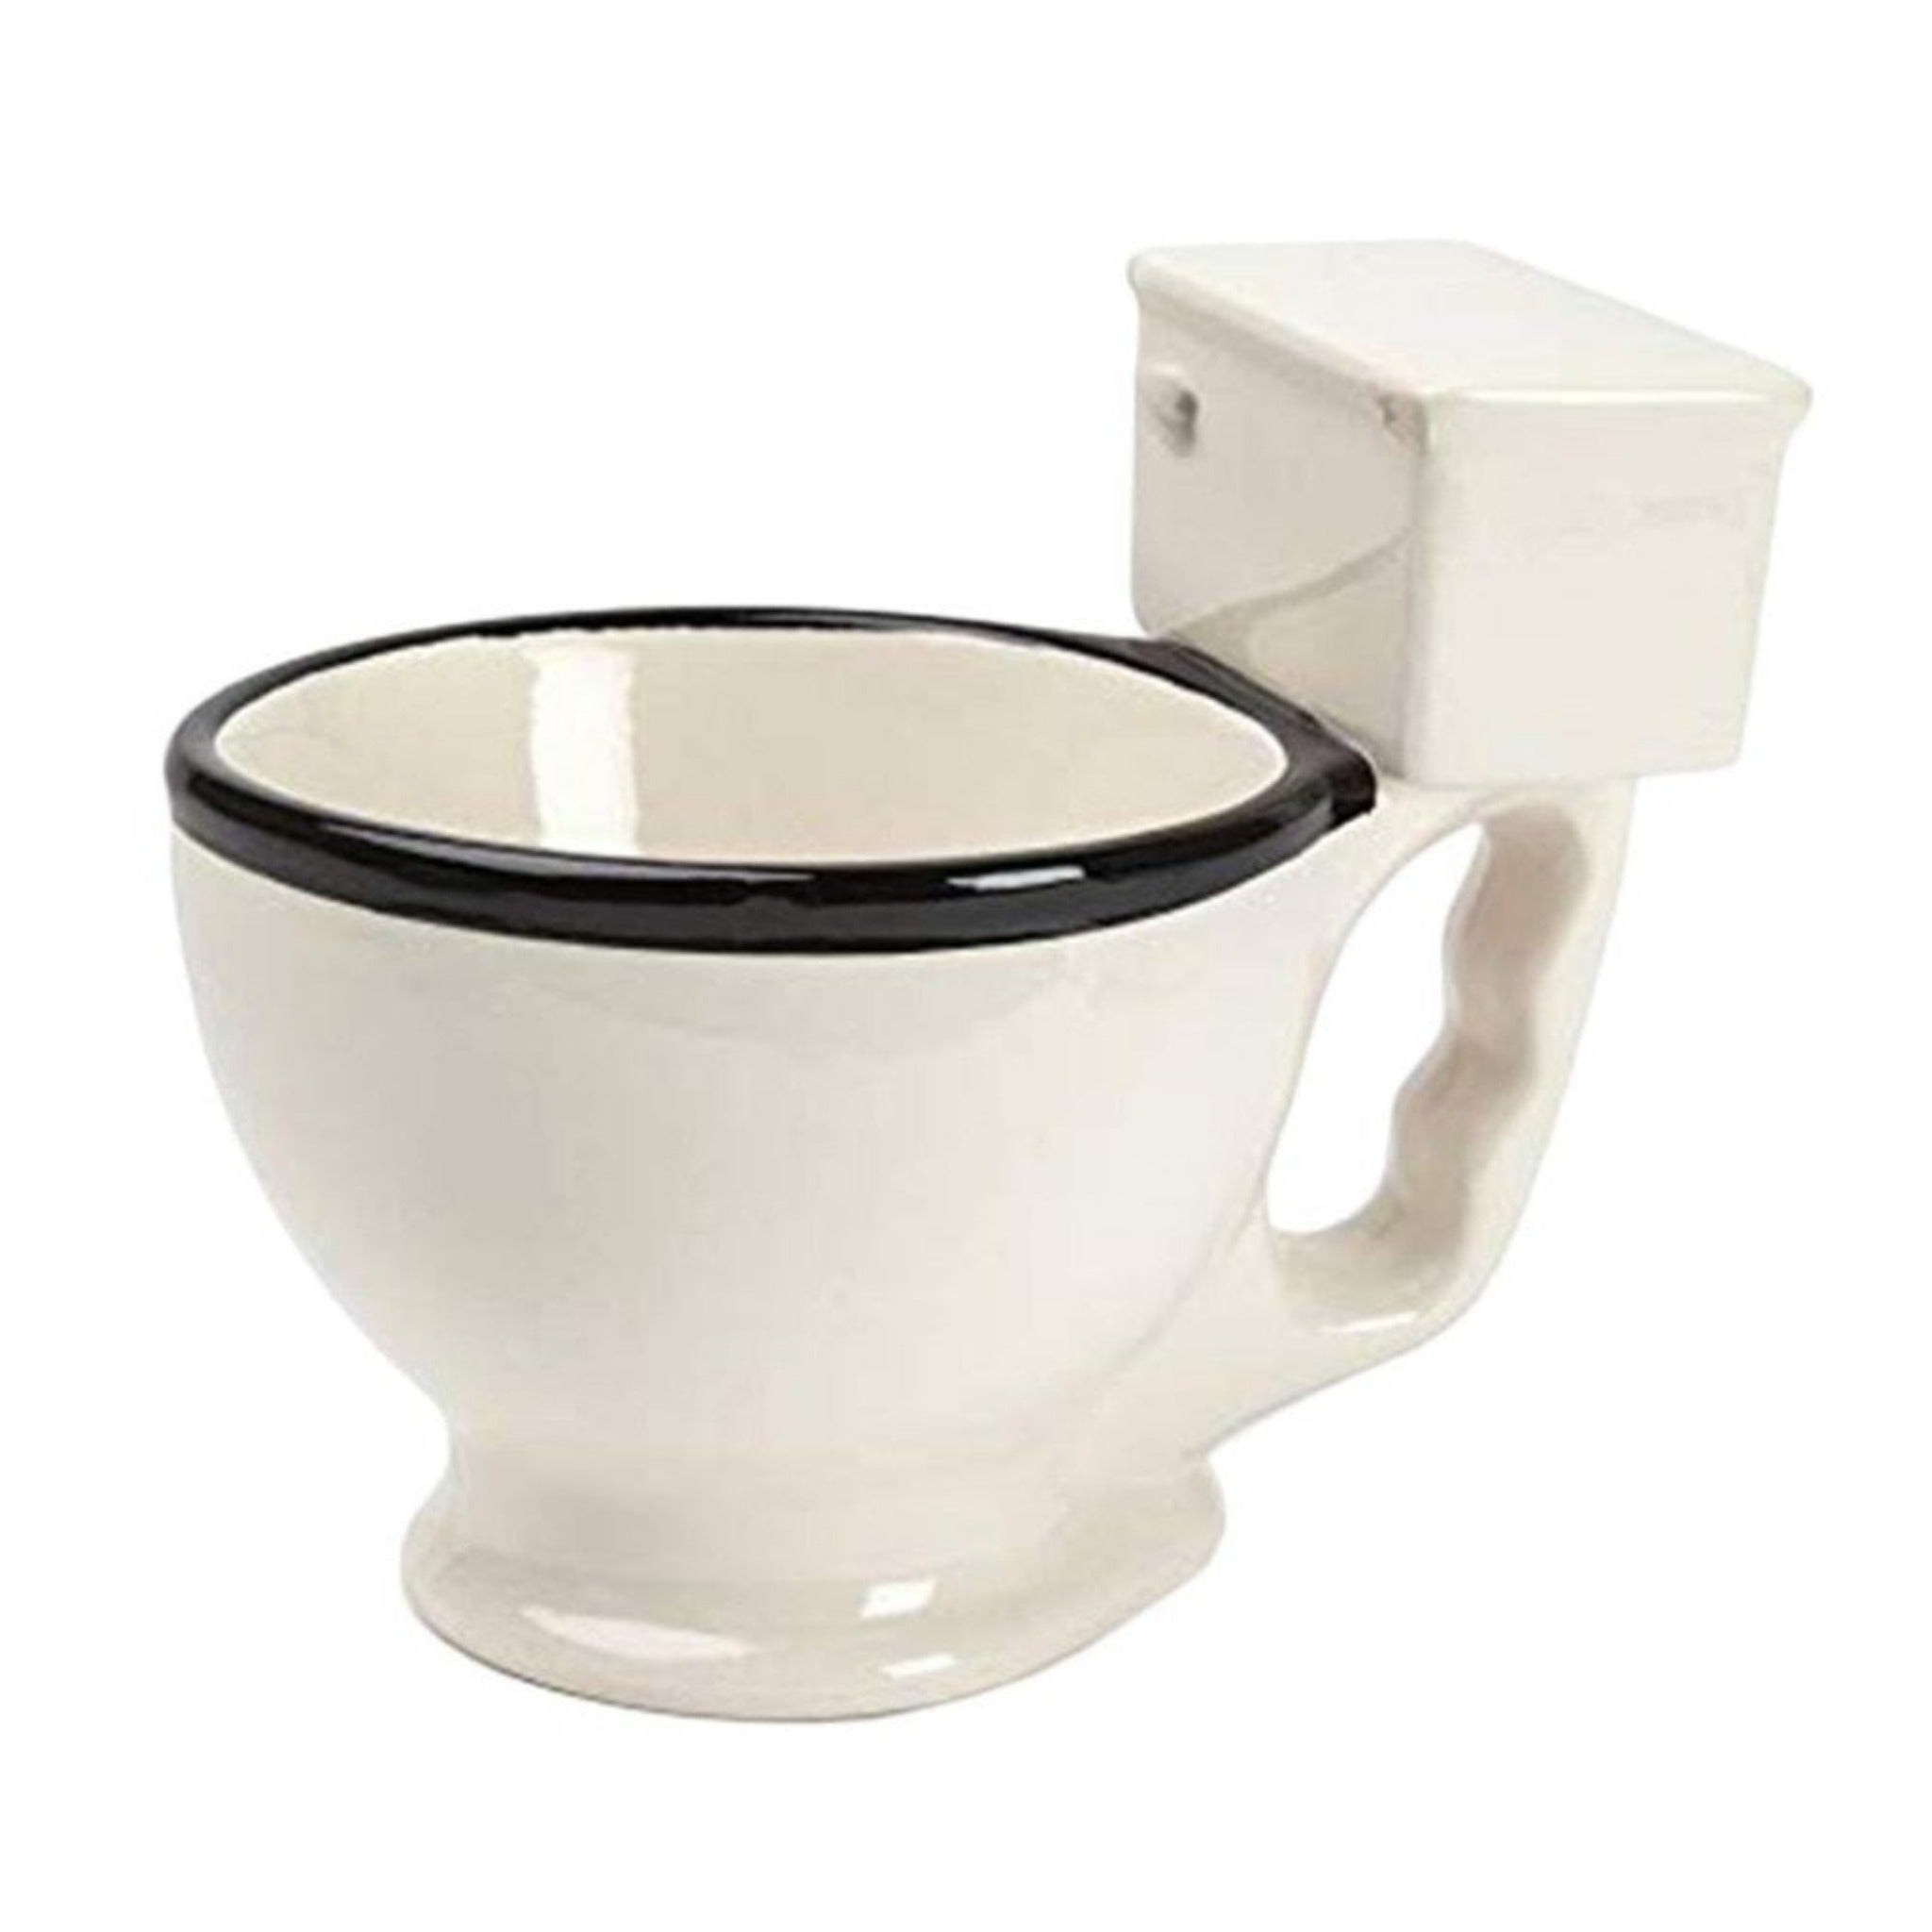 Coffee Mug - Toliet Bowl Coffee Mug